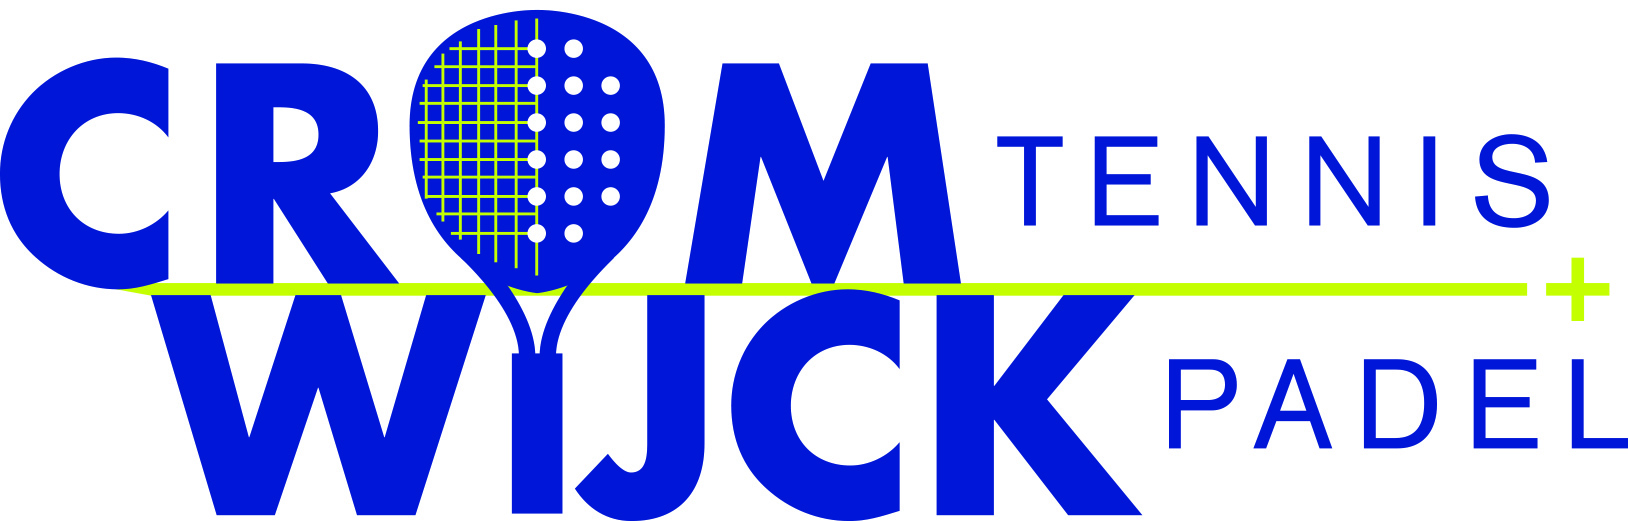 Logo TV Cromwijck